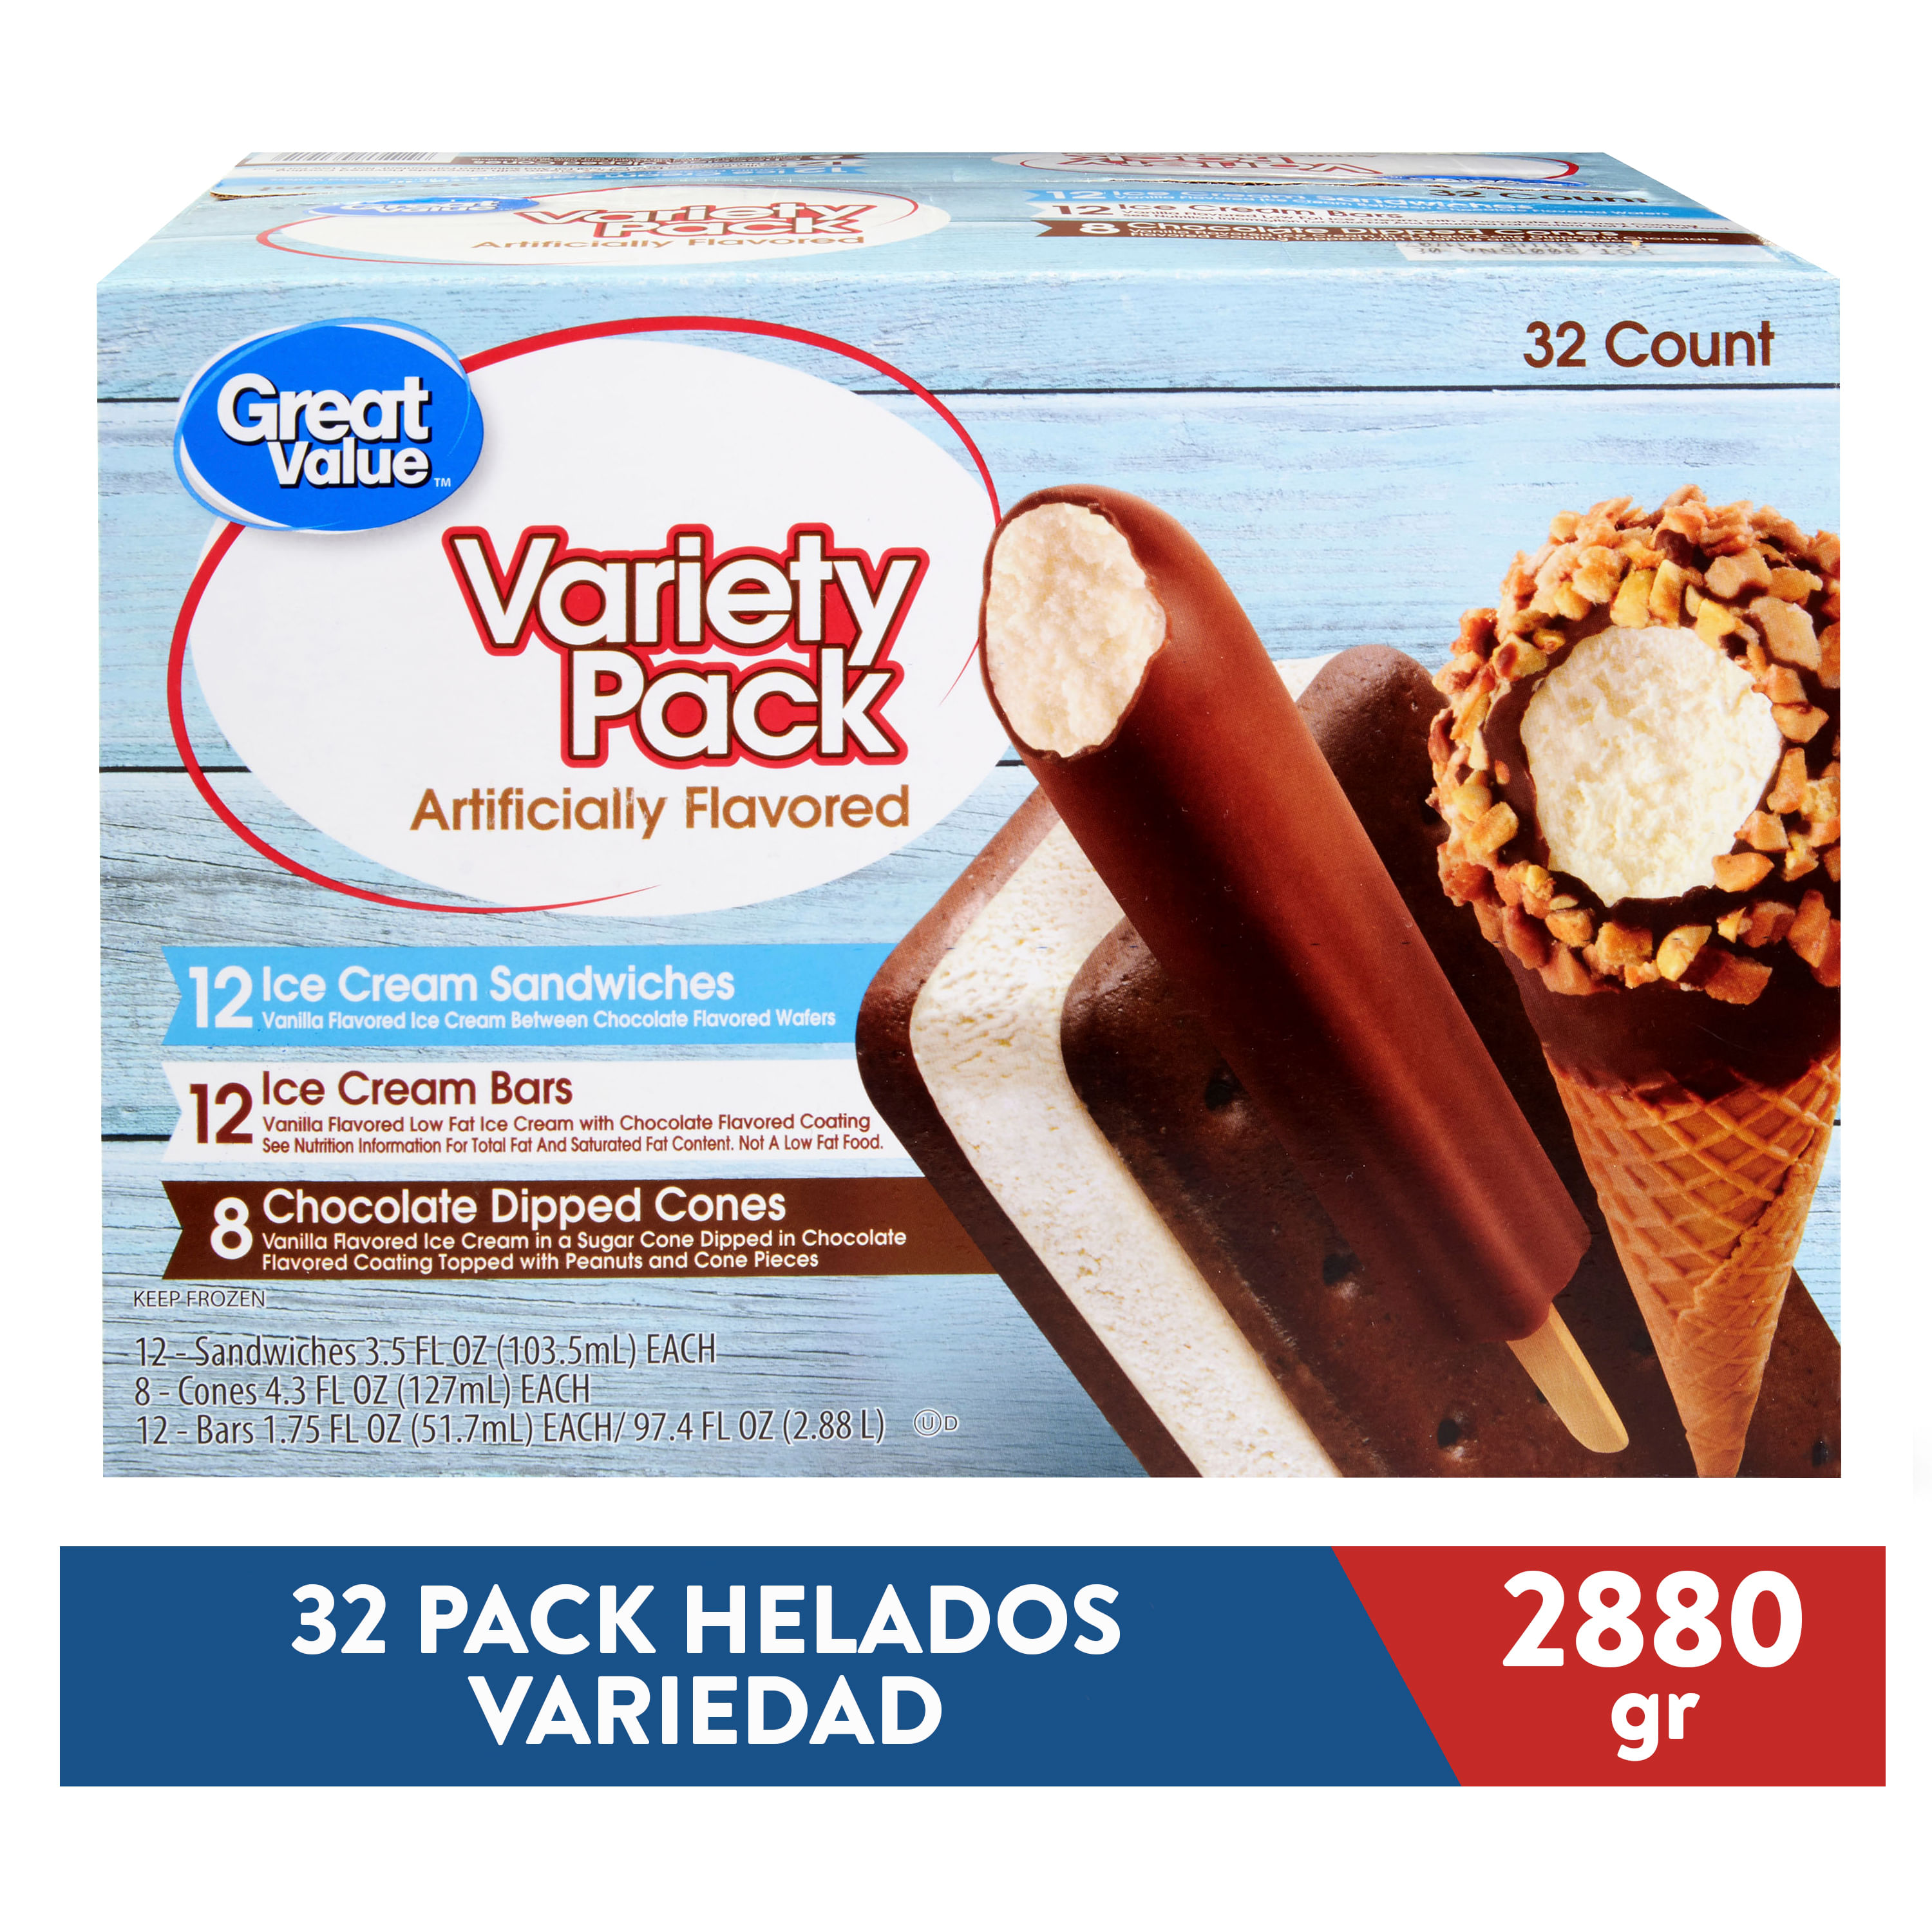 32-Pack-Helado-Great-Value-Variedad-2880gr-1-7425